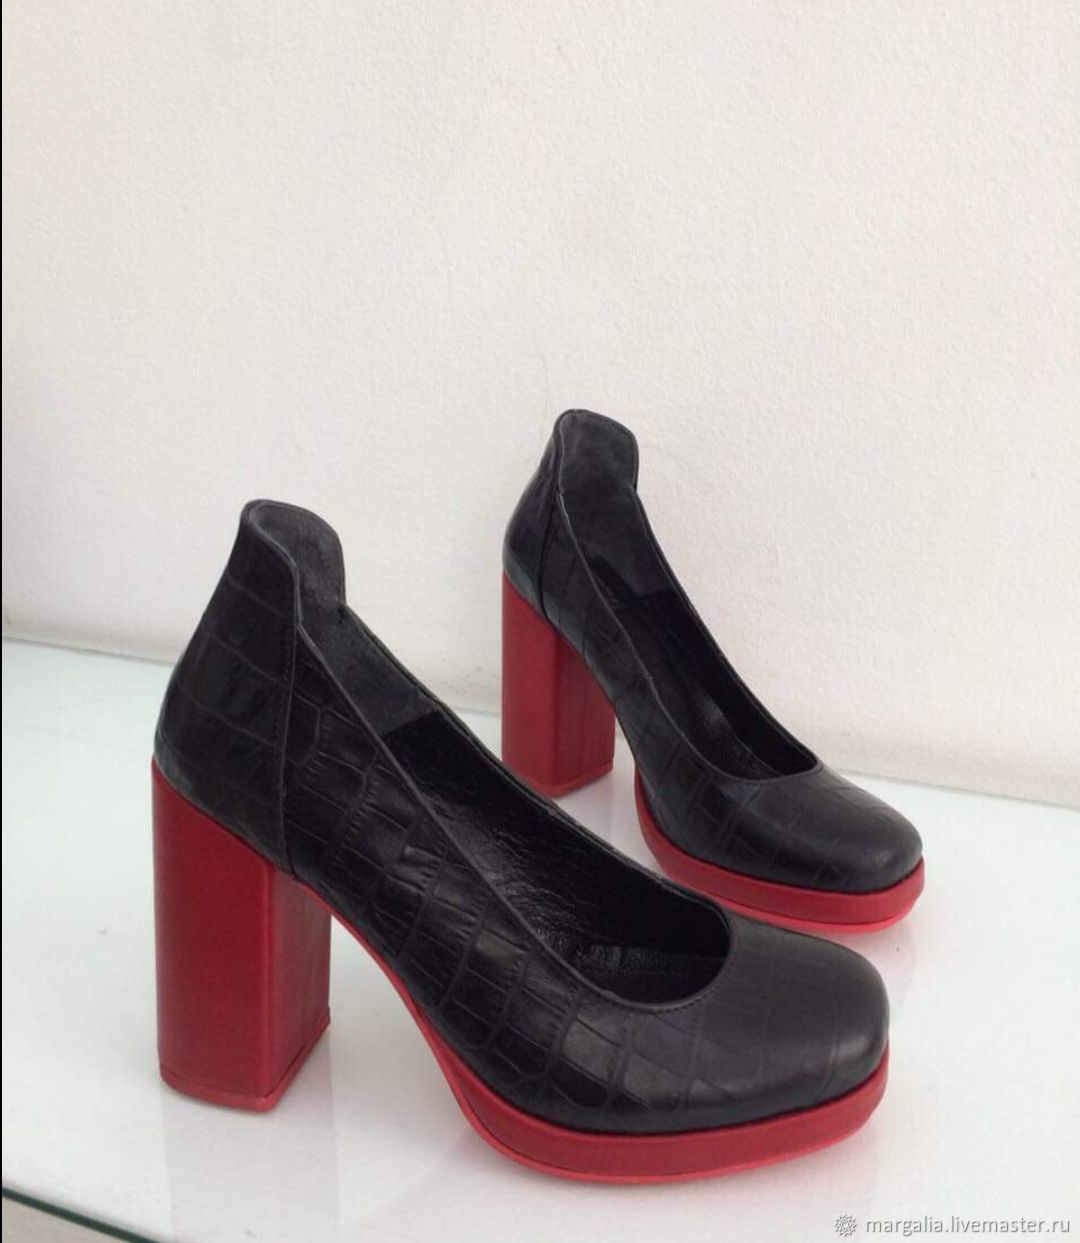 Ботинки с красной подошвой. Туфли Balizza Donna с красной подошвой. Баскони черные туфли с красной подошвой. Сапоги с красной подошвой. Черные туфли с красной подошвой.